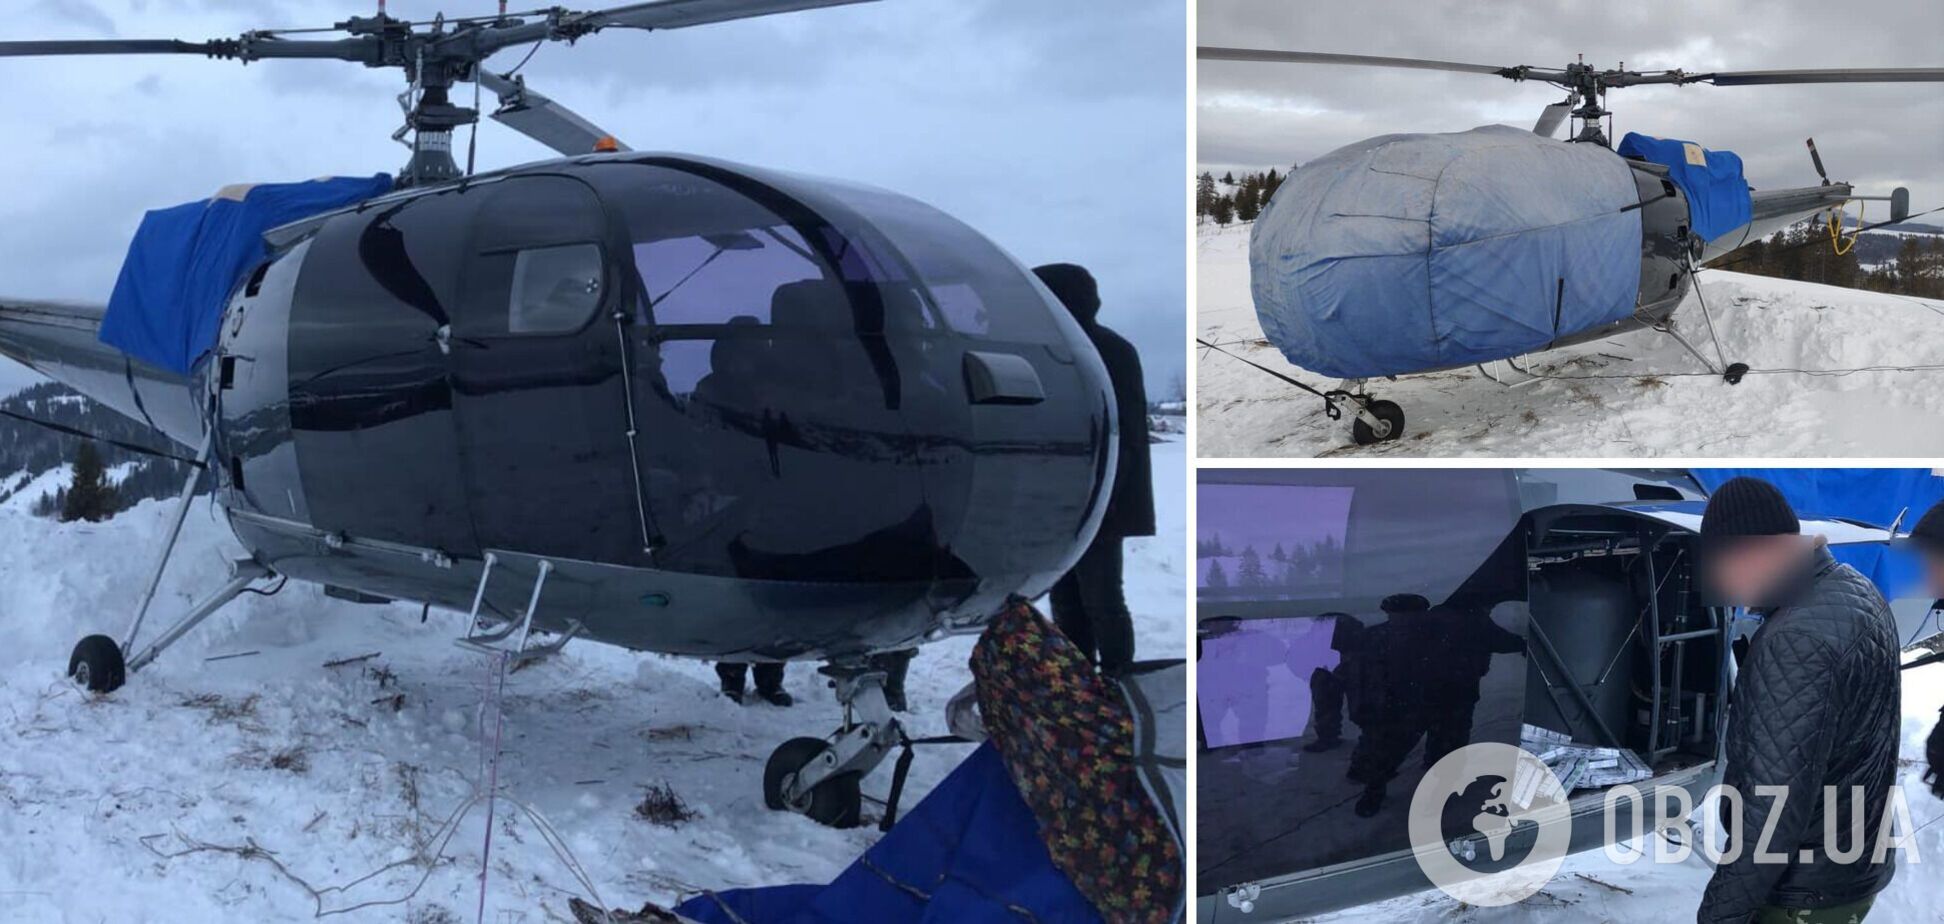 Доставка контрабанды классом 'Люкс': на Закарпатье обнаружили вертолет, незаконно пересекавший границу. Фото и видео